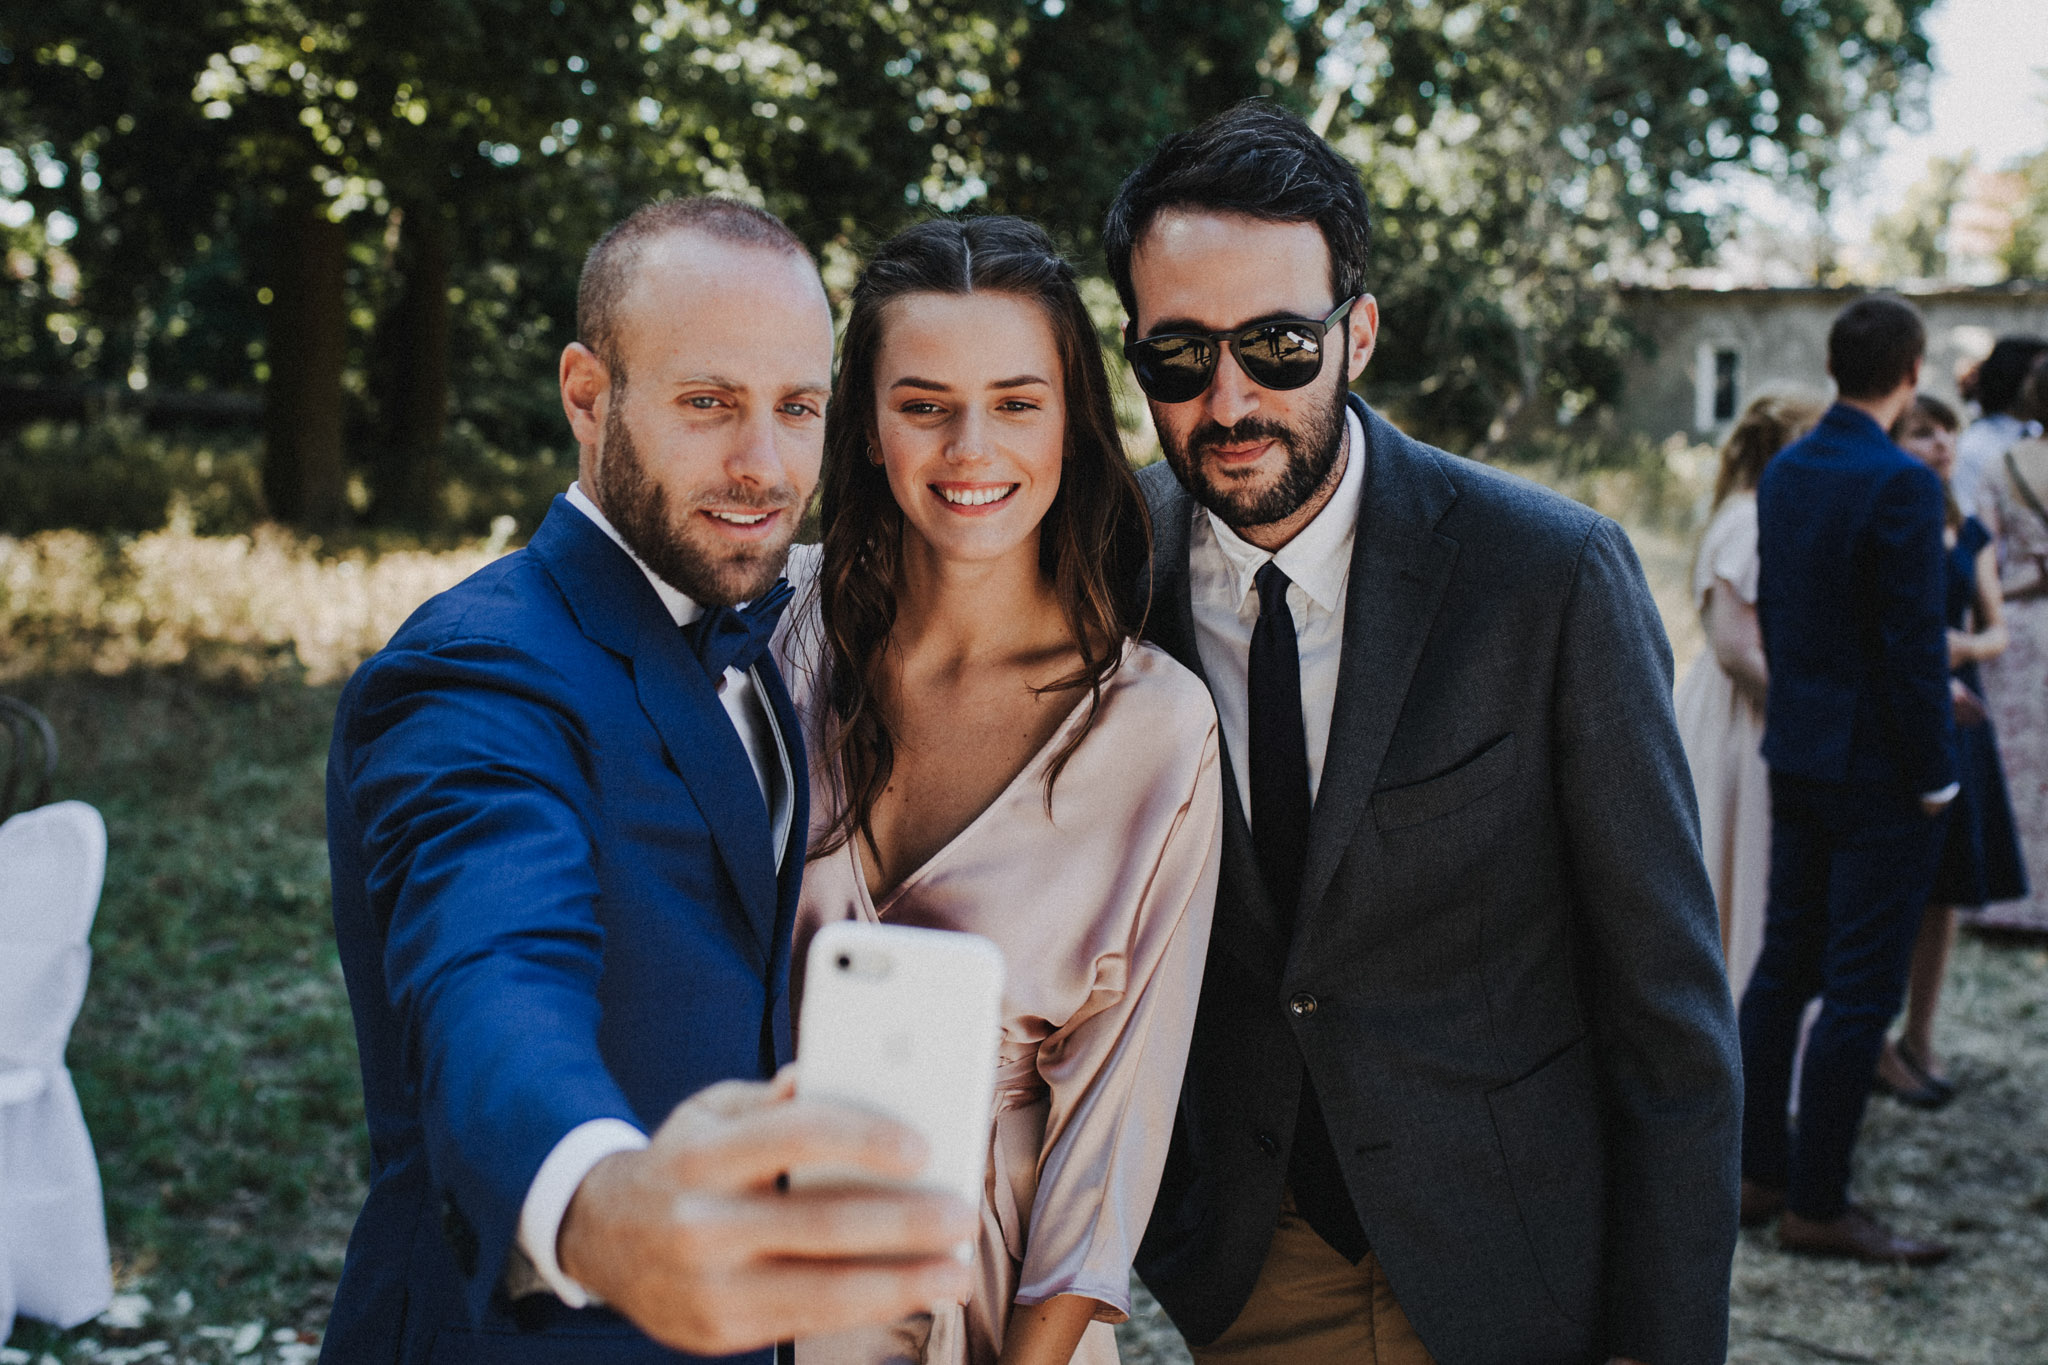 Gäste bei einer Hochzeit machen ein Selfie